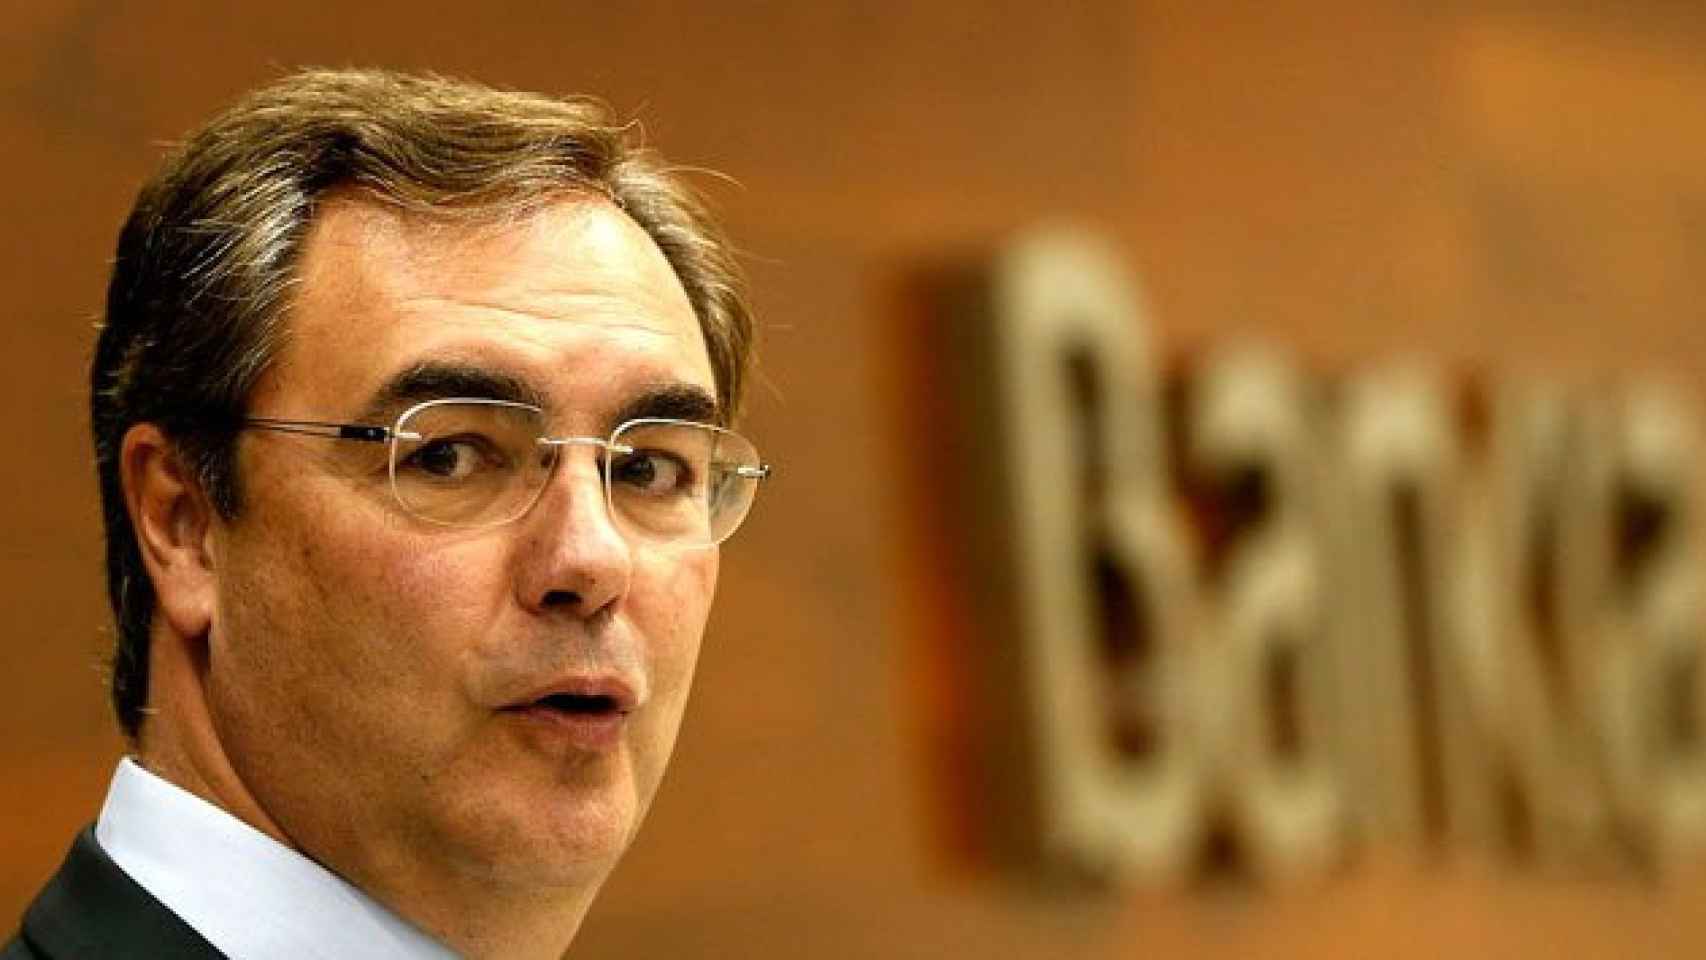 El consejero delegado de Bankia, José Sevilla, en una imagen de archivo.